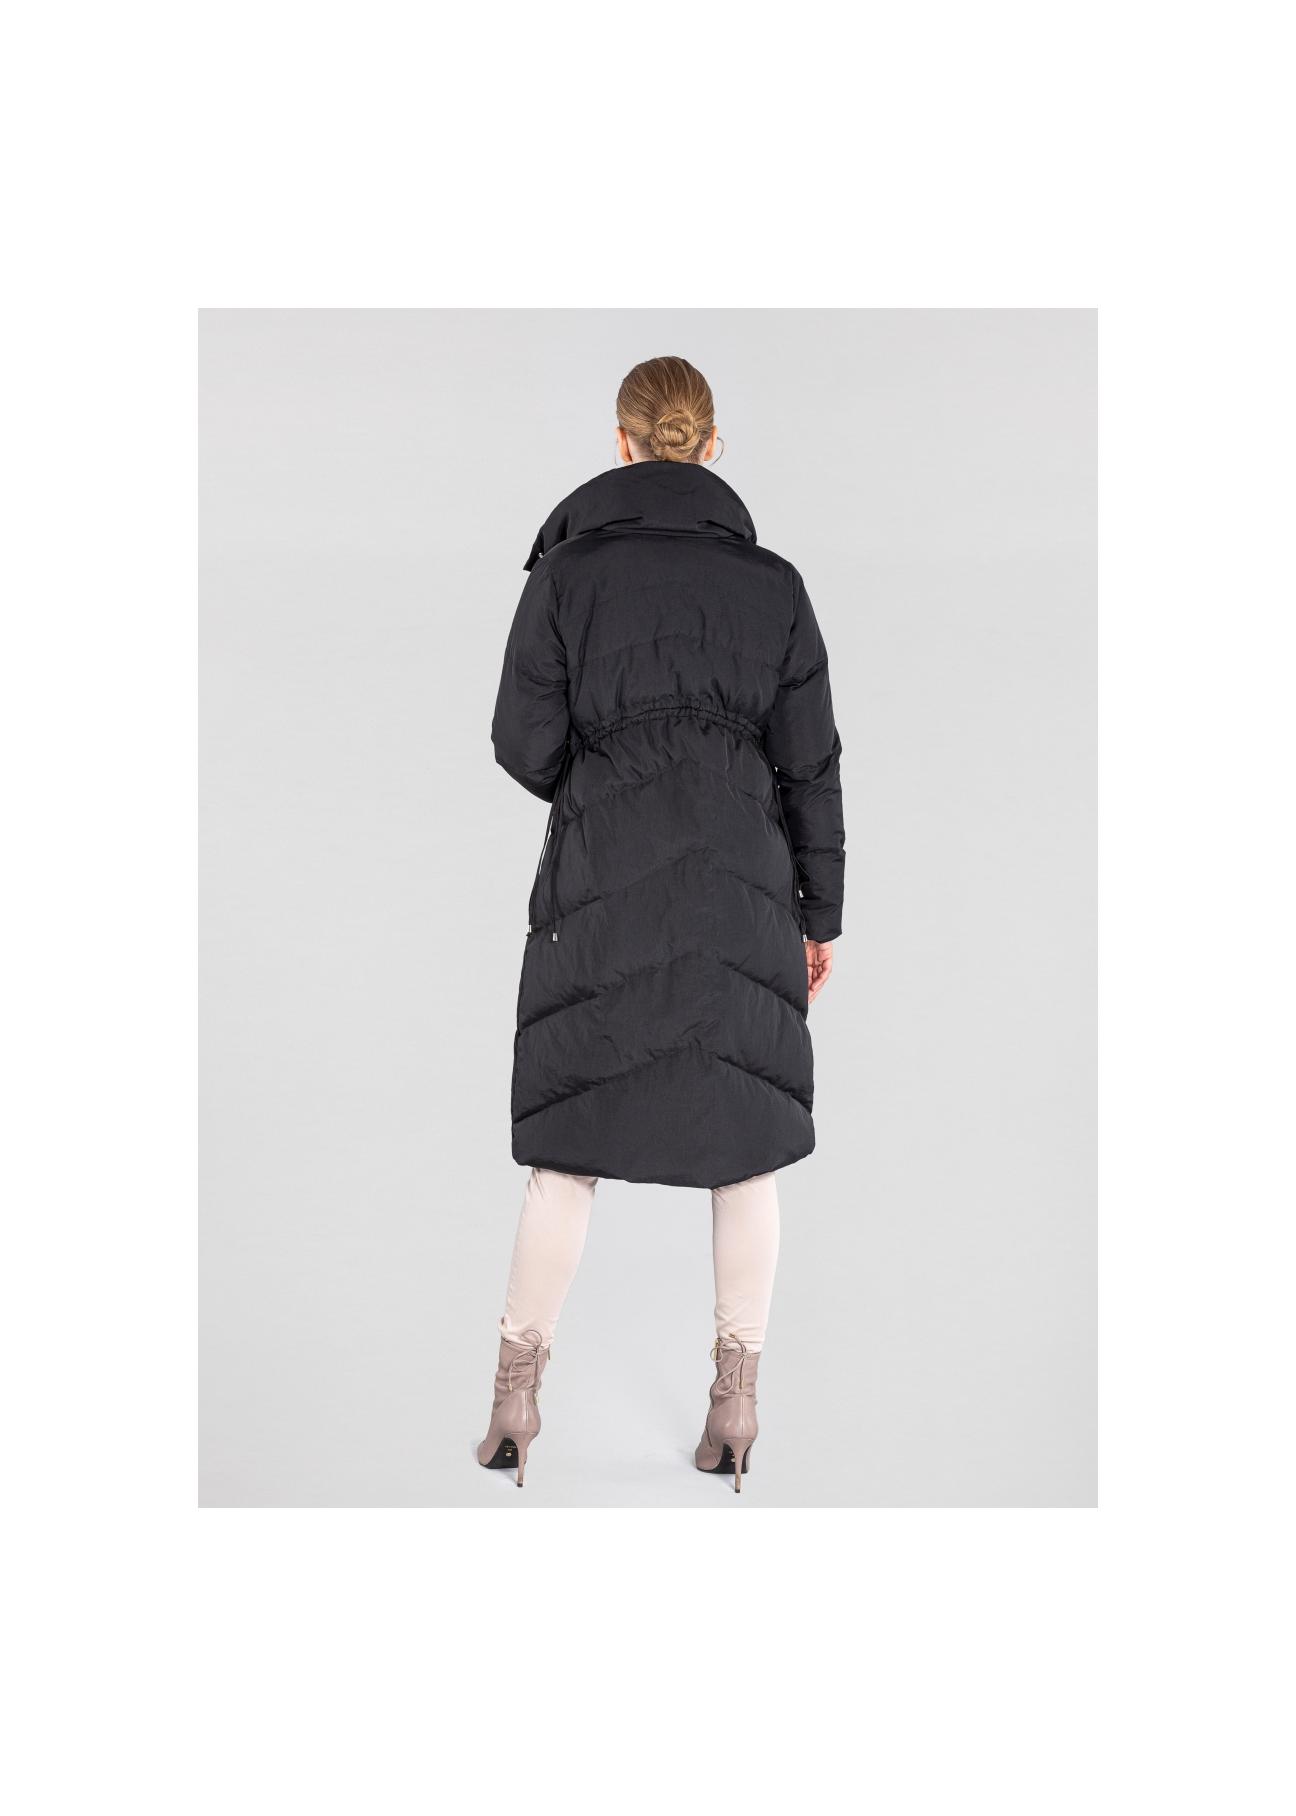 Długa czarna kurtka damska z puchem KURDT-0275-99(Z20)